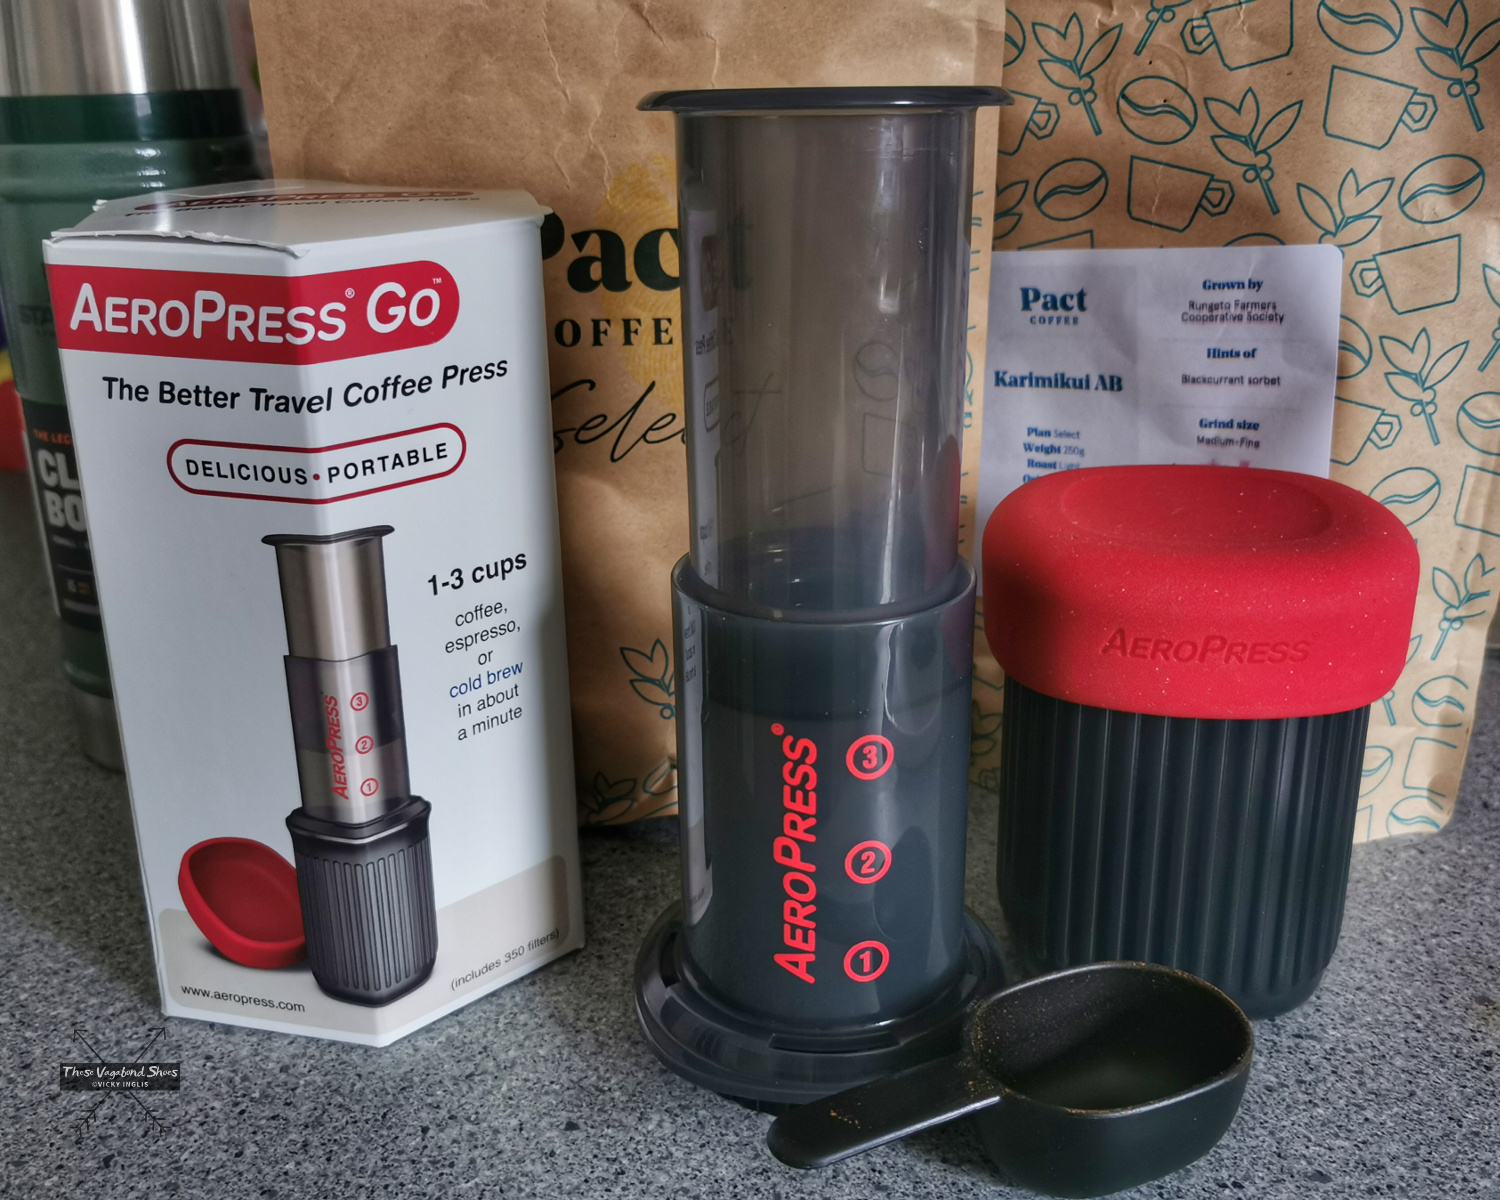  Aeropress Go Travel Coffee Press Kit - 3 in 1 brew